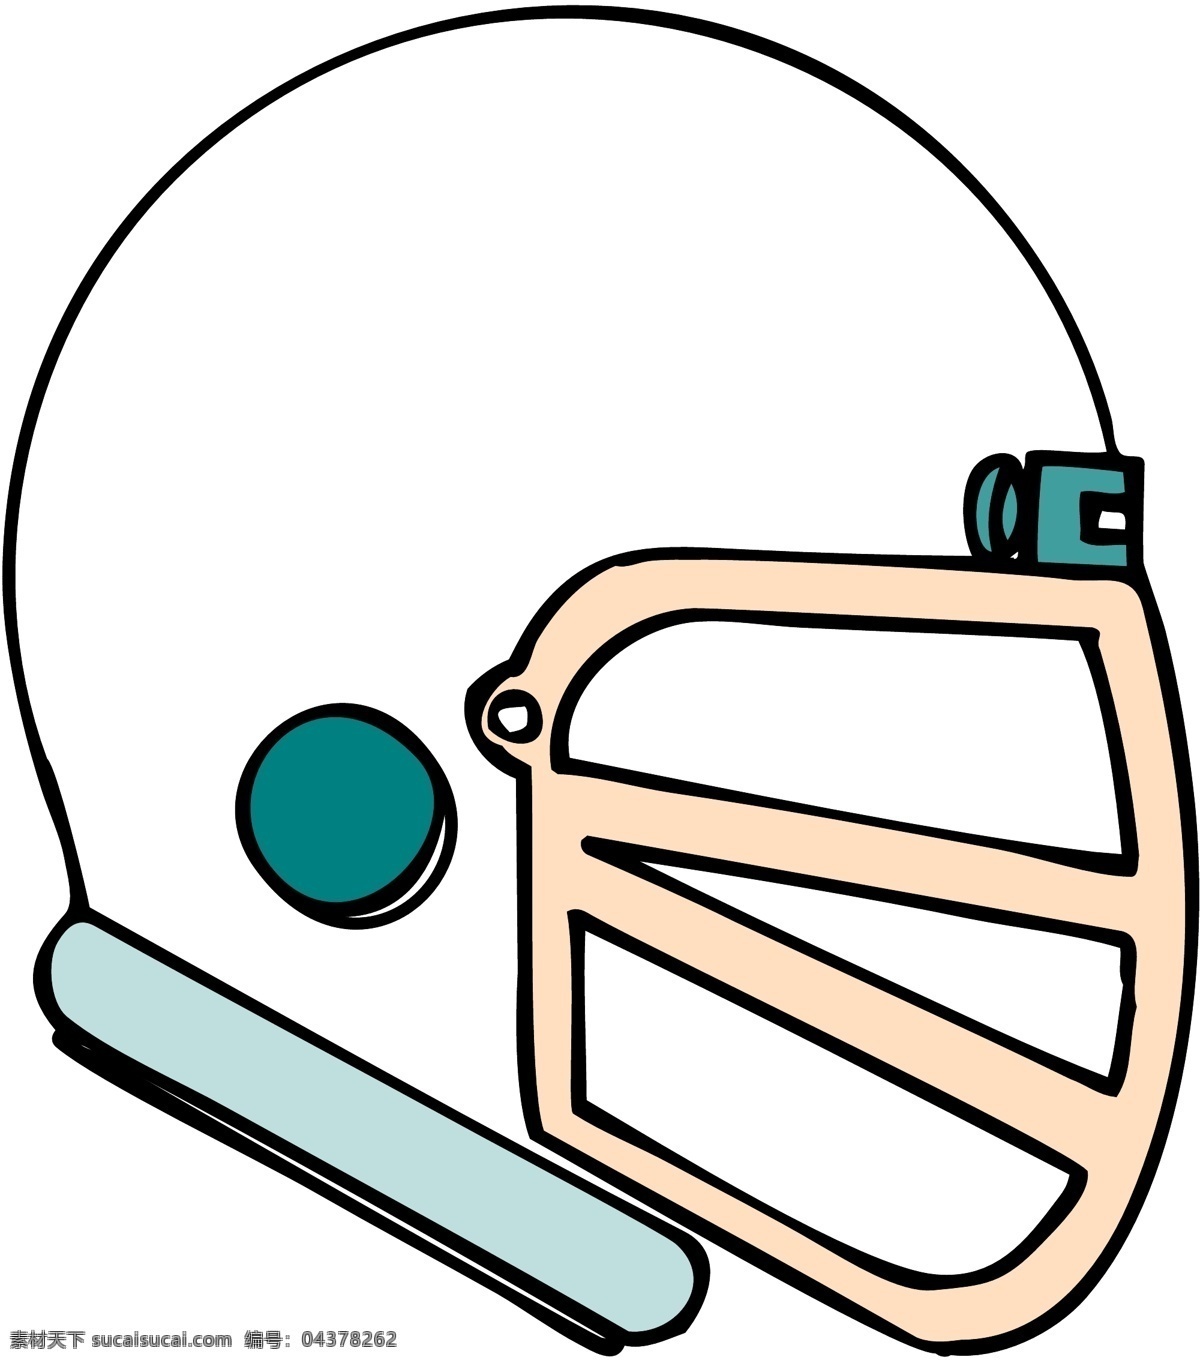 橄榄球帽 体育用品 矢量素材 格式 eps格式 设计素材 体育世界 矢量图库 白色